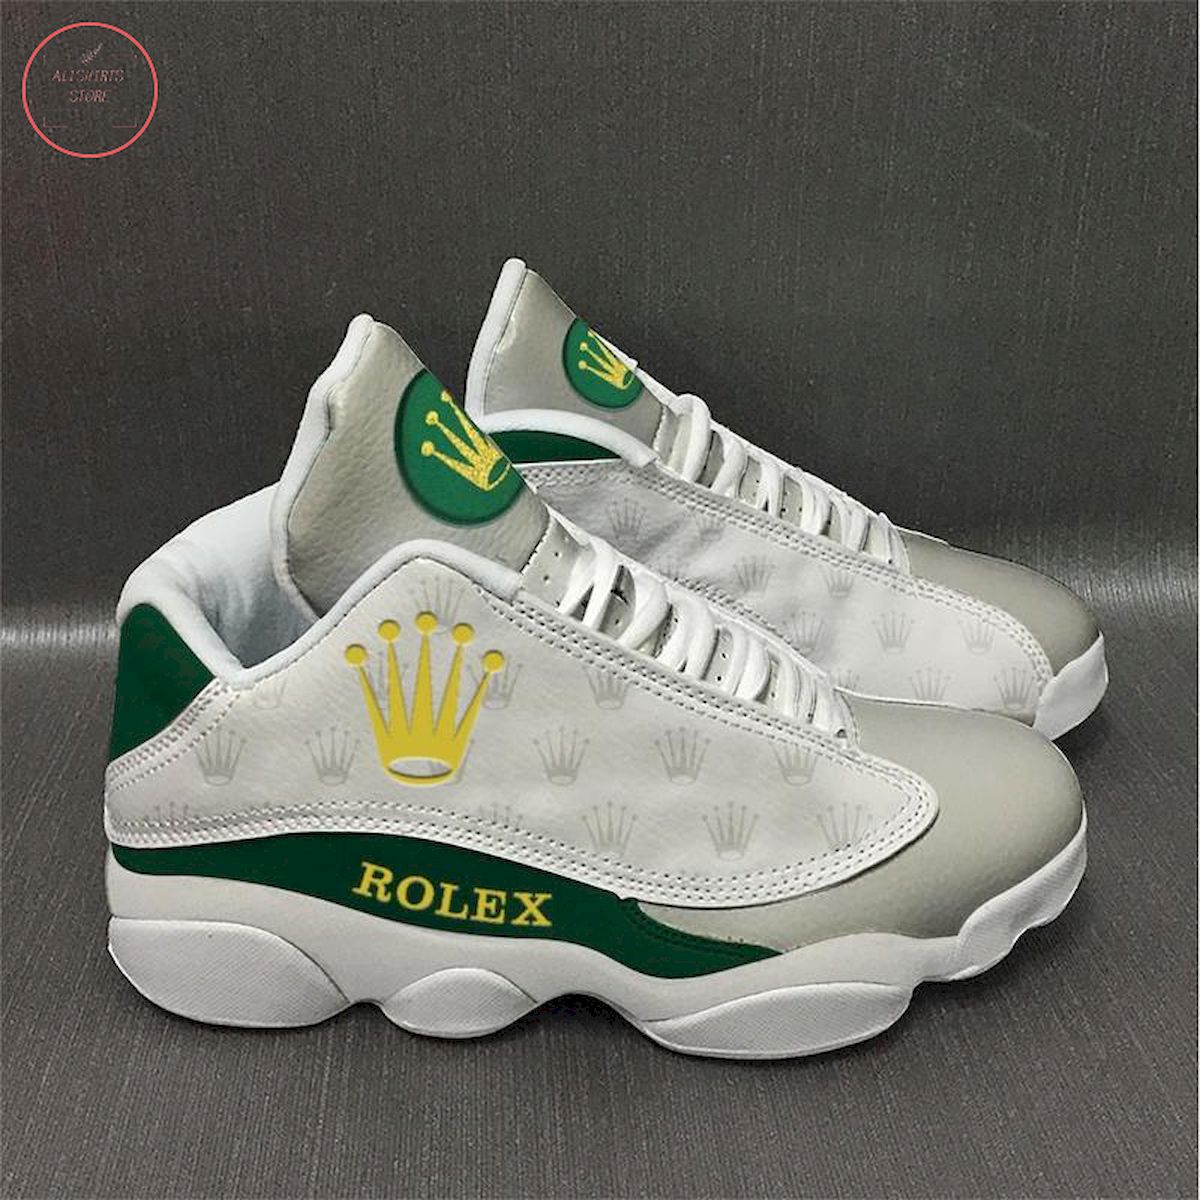 Rolex Air Jordan 13 Sneaker Shoes